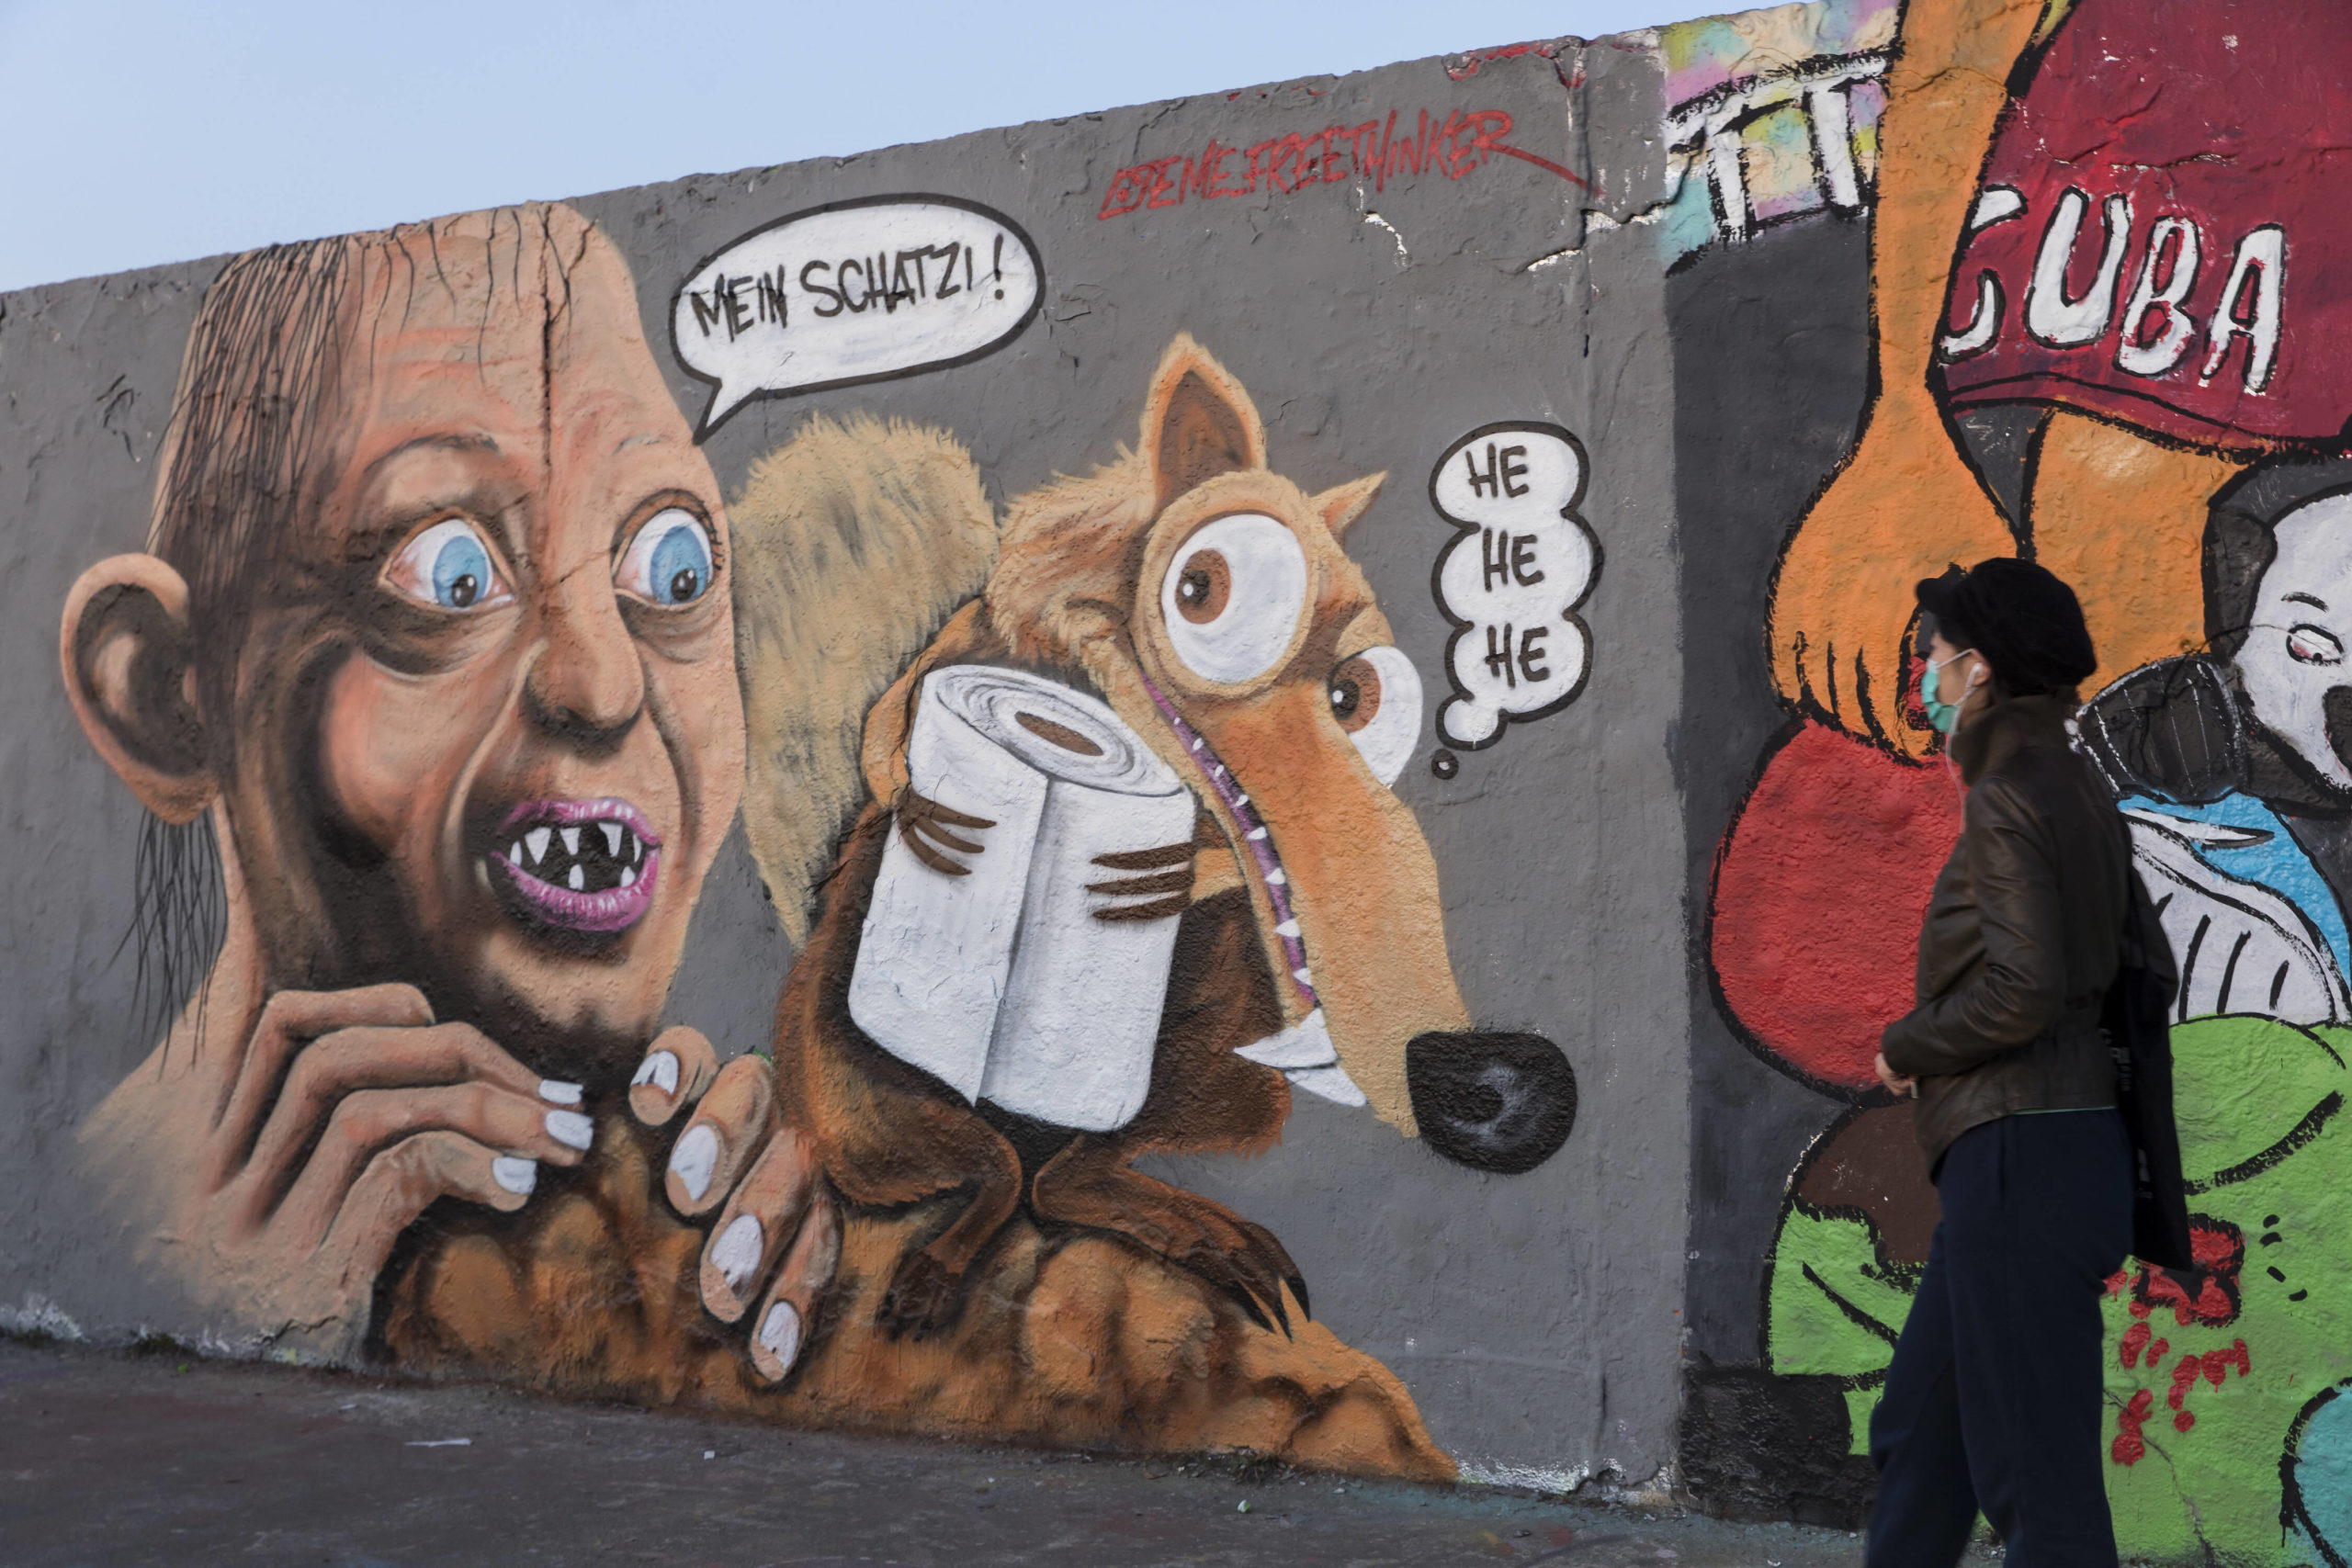 Corona Berlin Chronik: Klopapier-Grafitti zur Corona-Krise gesprüht von Eme Freethinker im Mauerpark, Foto vom 11. April 2020. Foto: Imago/Pop-Eye/Ben Kriemann